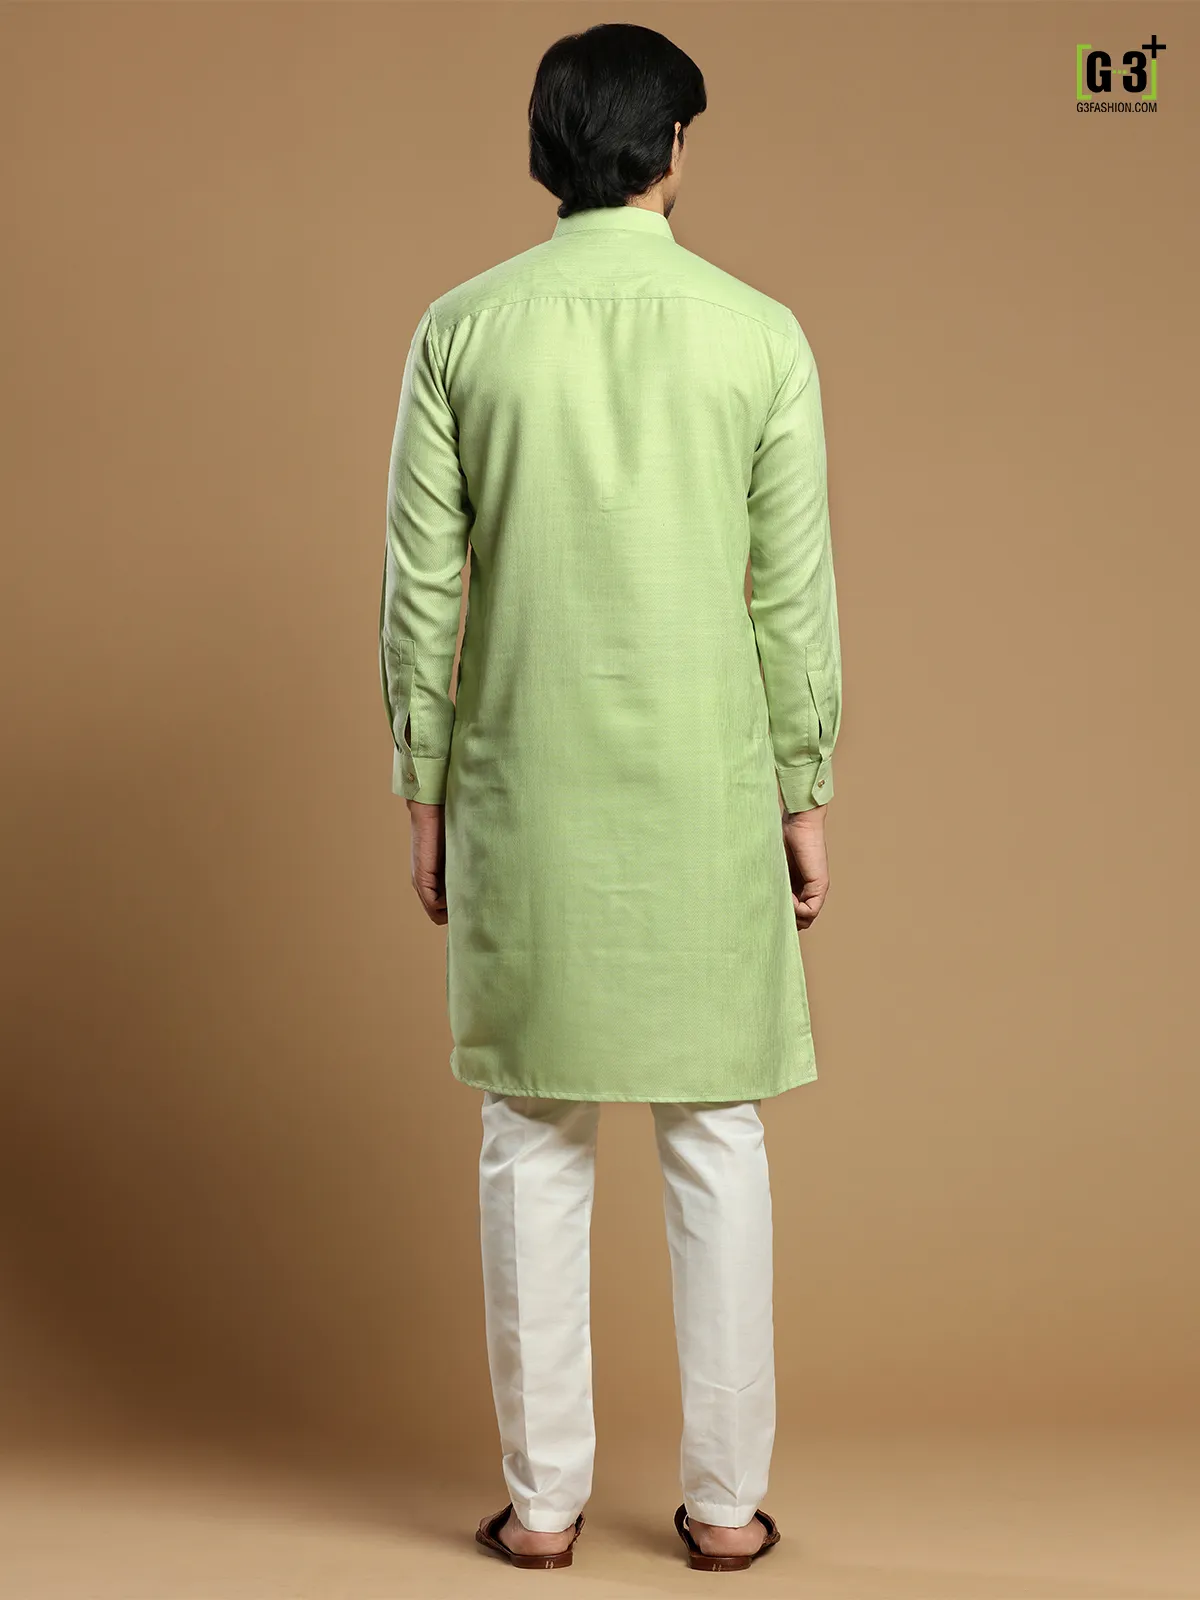 Pista green festive wear solid men kurta set in cotton